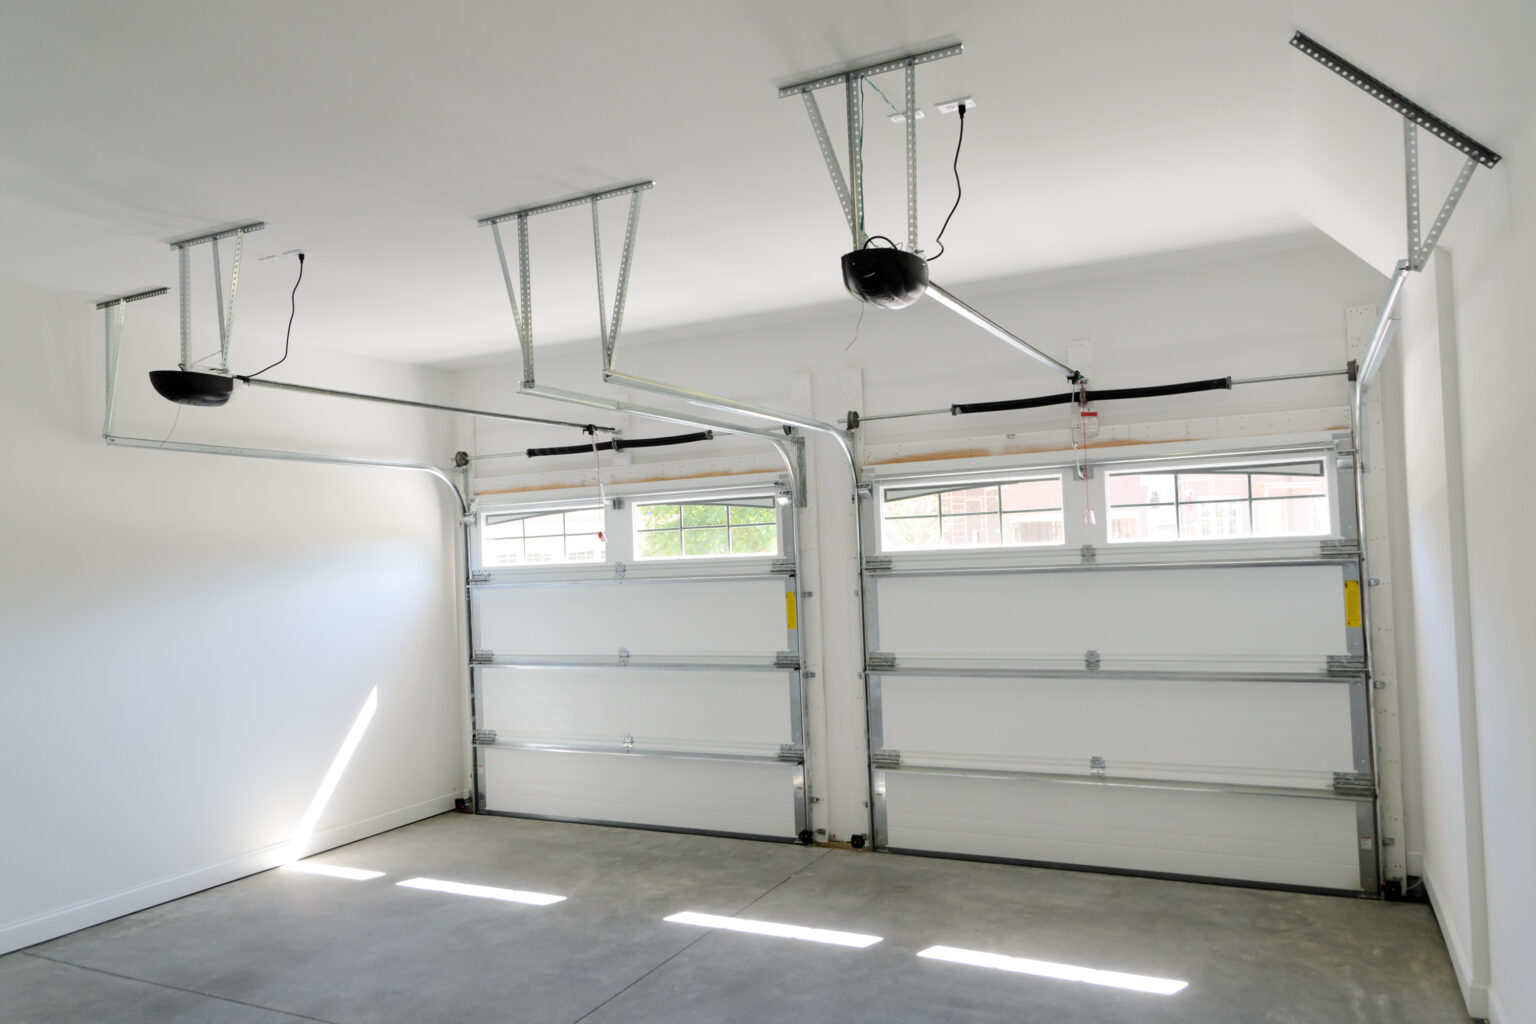 How to program liftmaster garage door opener?